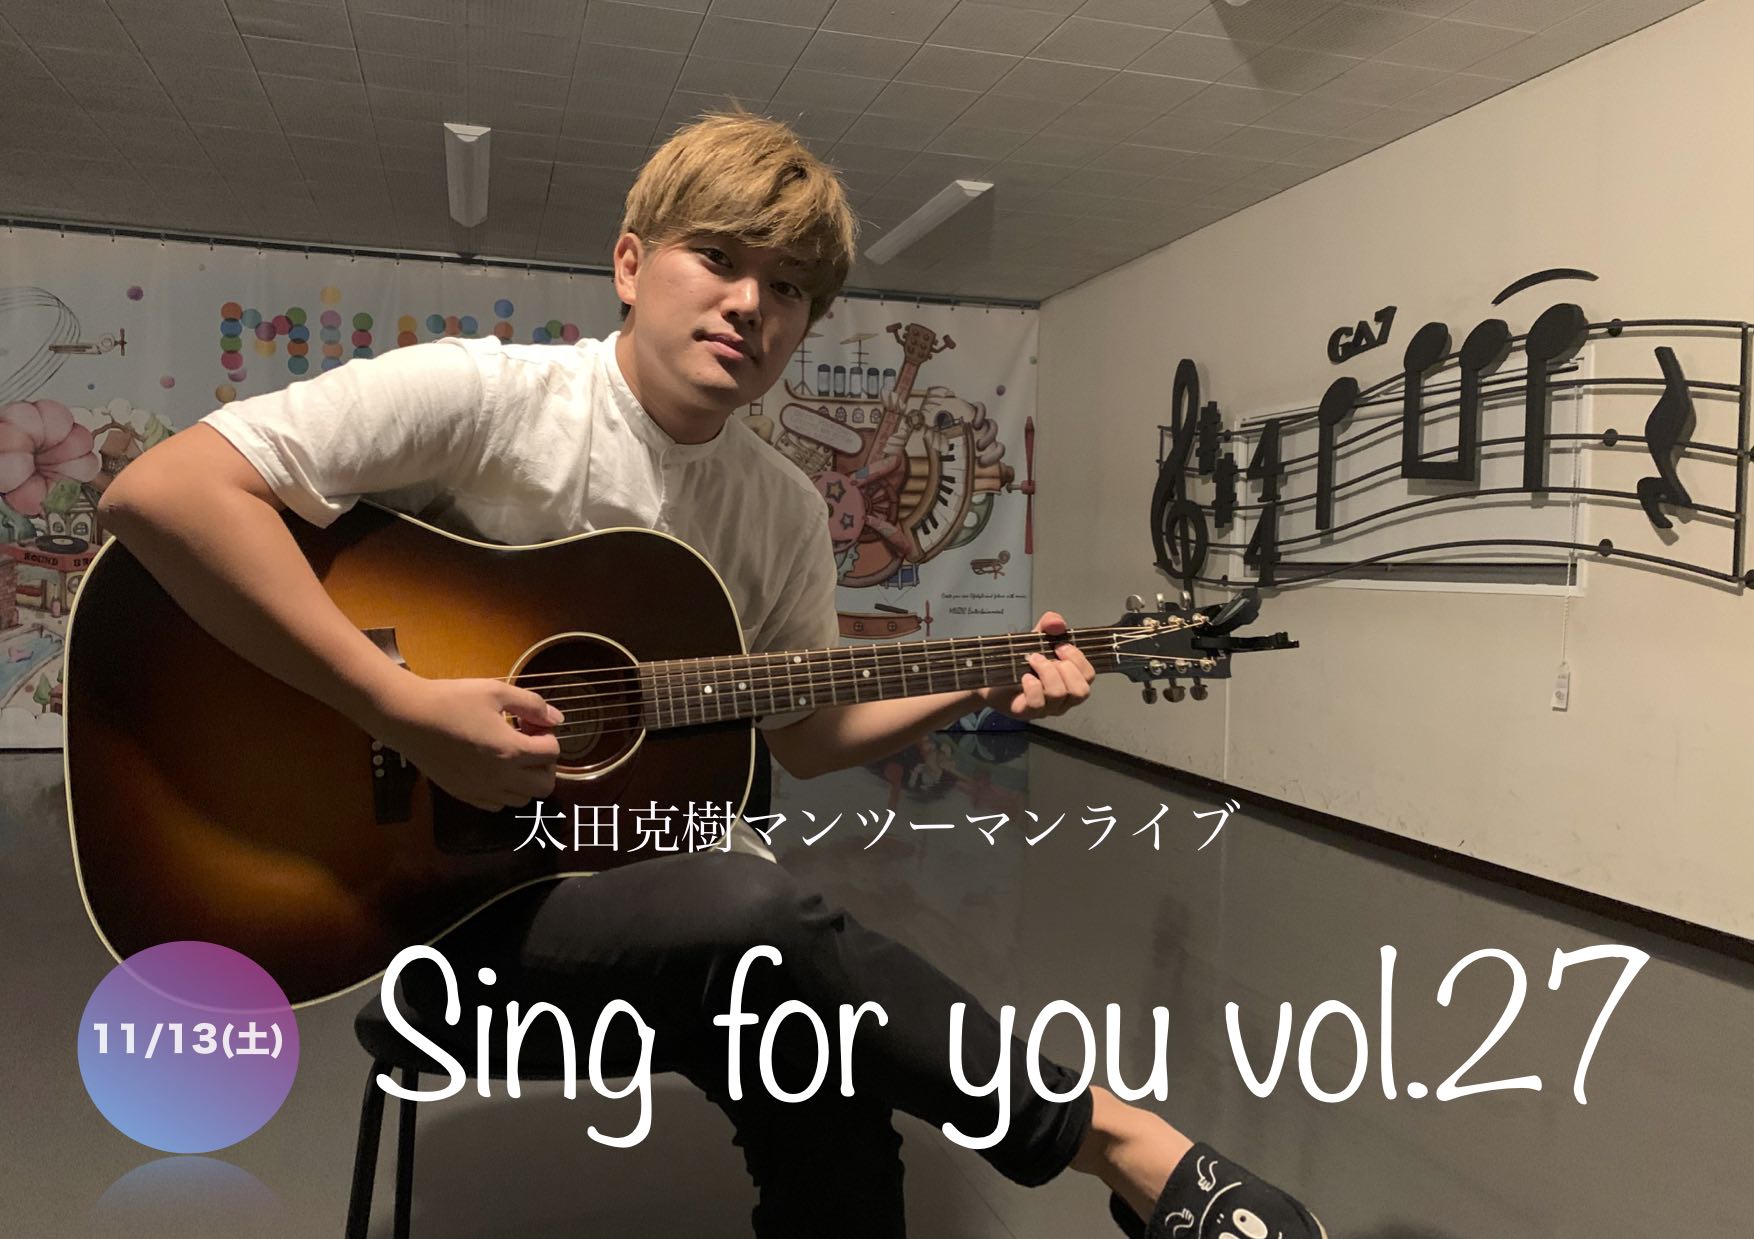 【太田克樹】11/14(日)マンツーマンライブ「Sing for you vol.27」